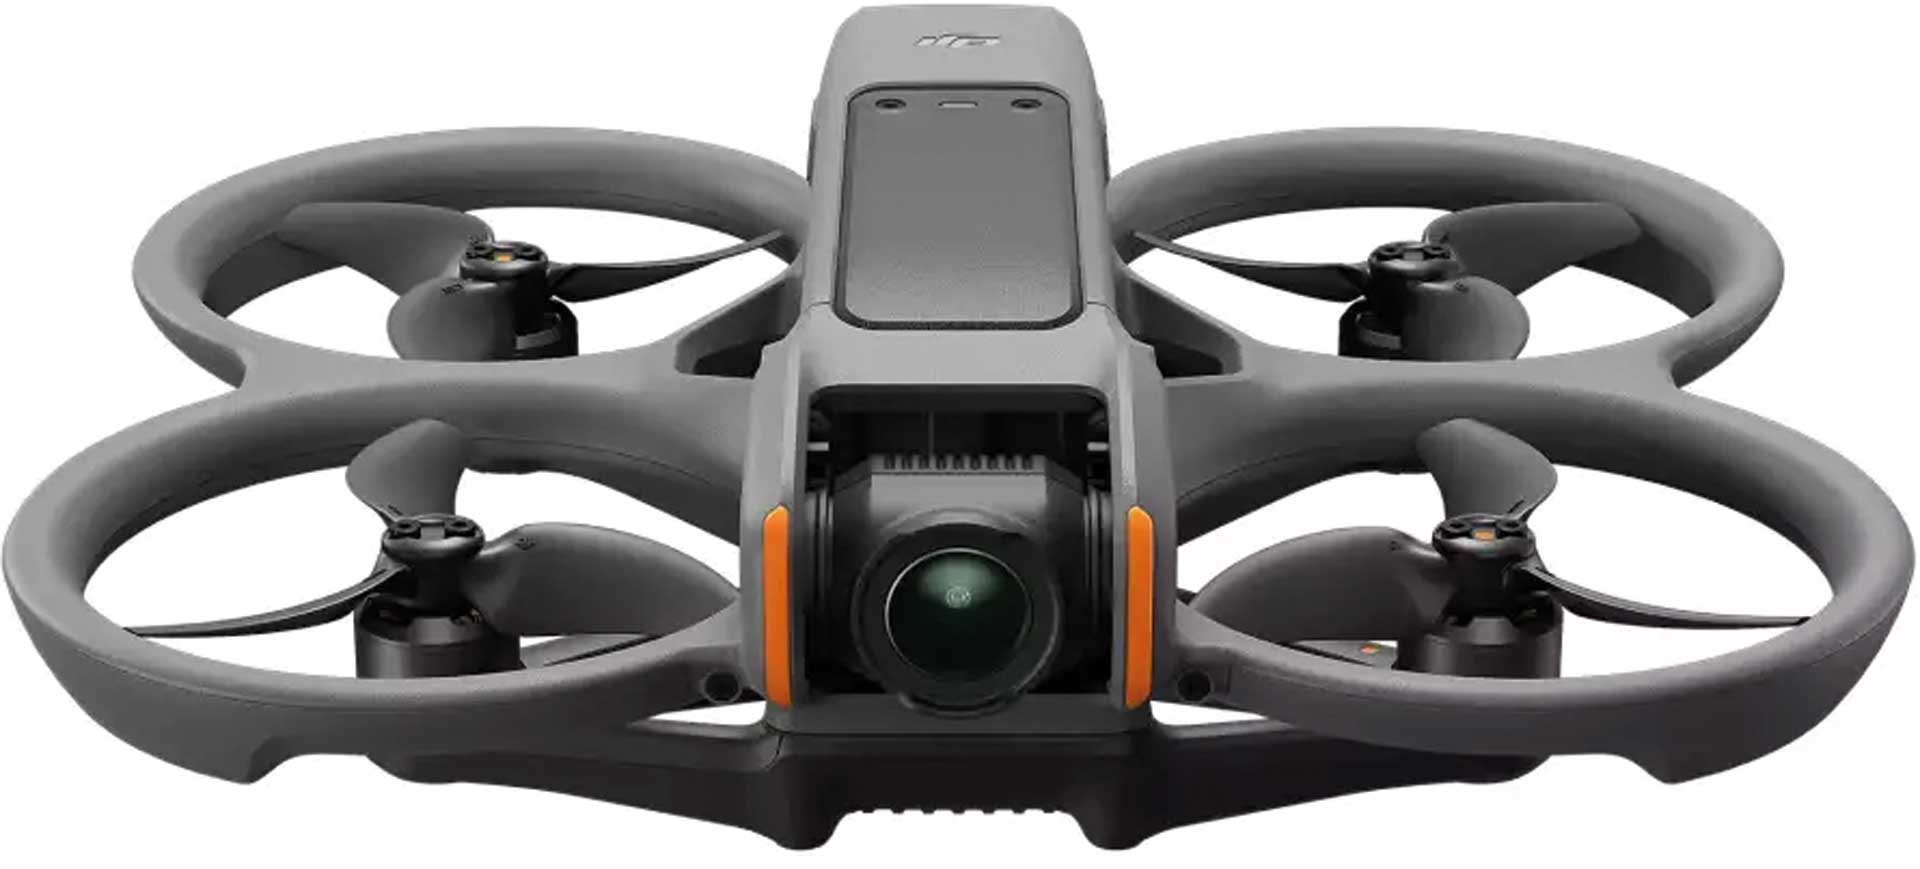 DJI Avata 2 (drone uniquement)